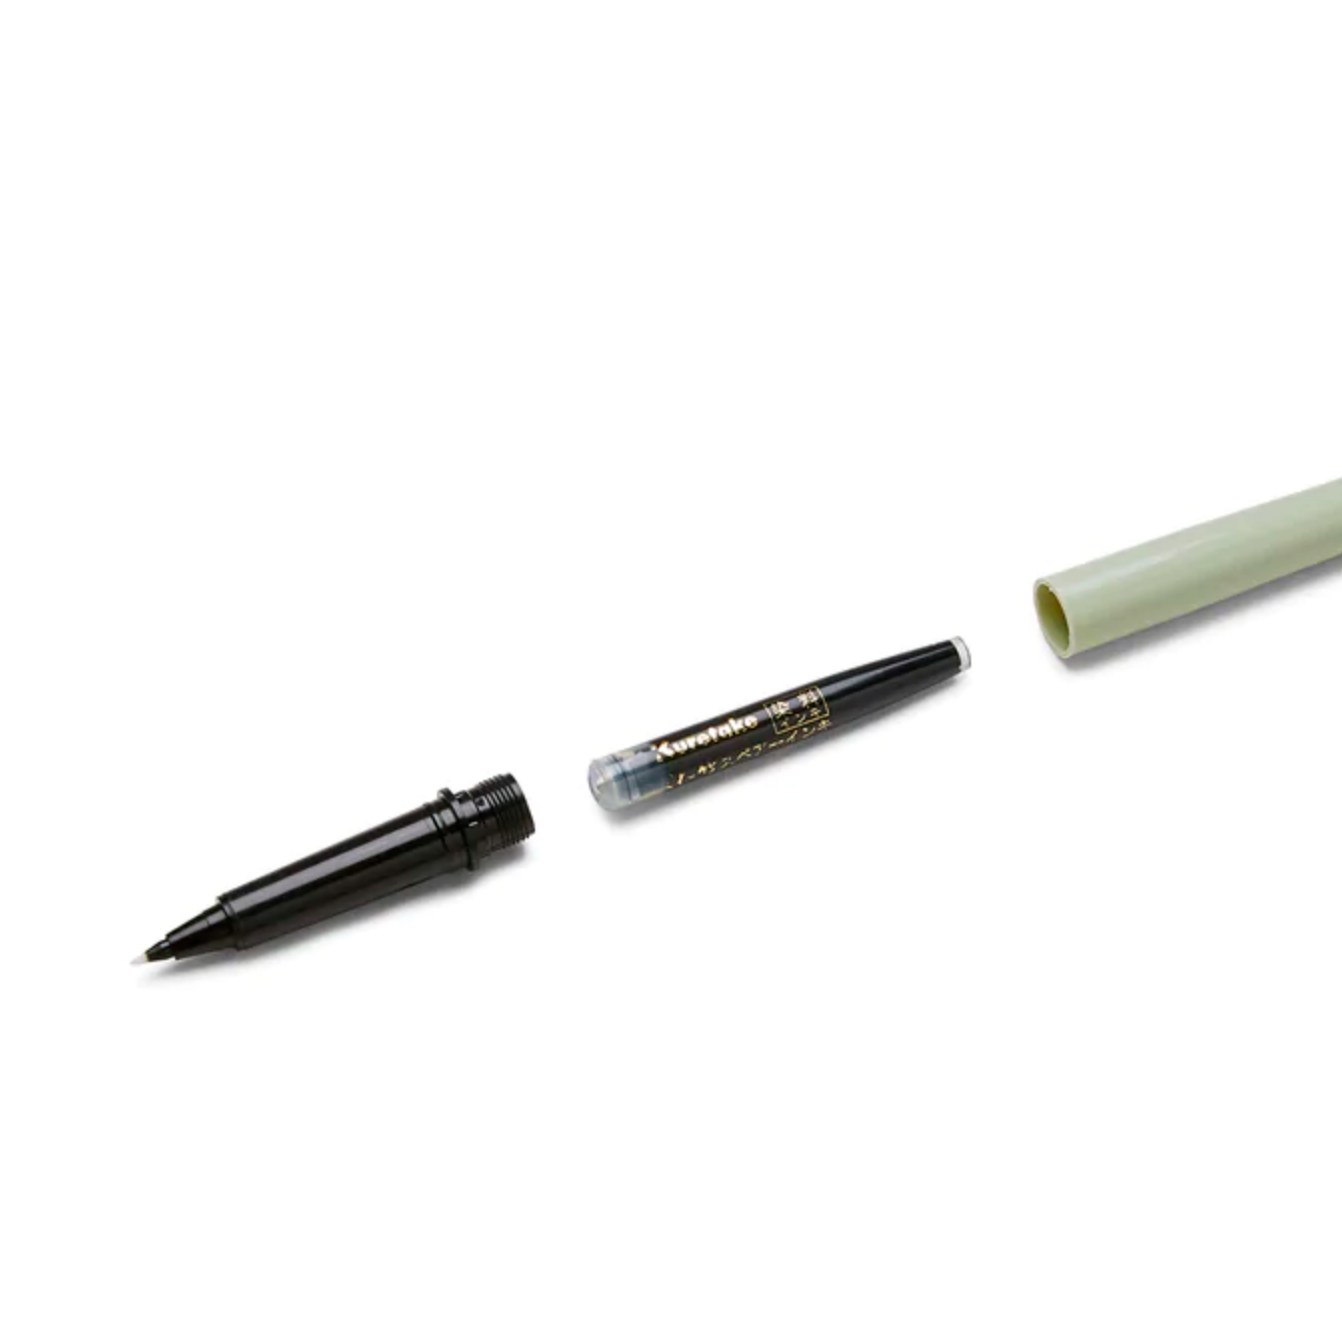 Kuretake Brush Pen No. 7 - Hoso-Taku Fude Pen - by Kuretake - K. A. Artist Shop